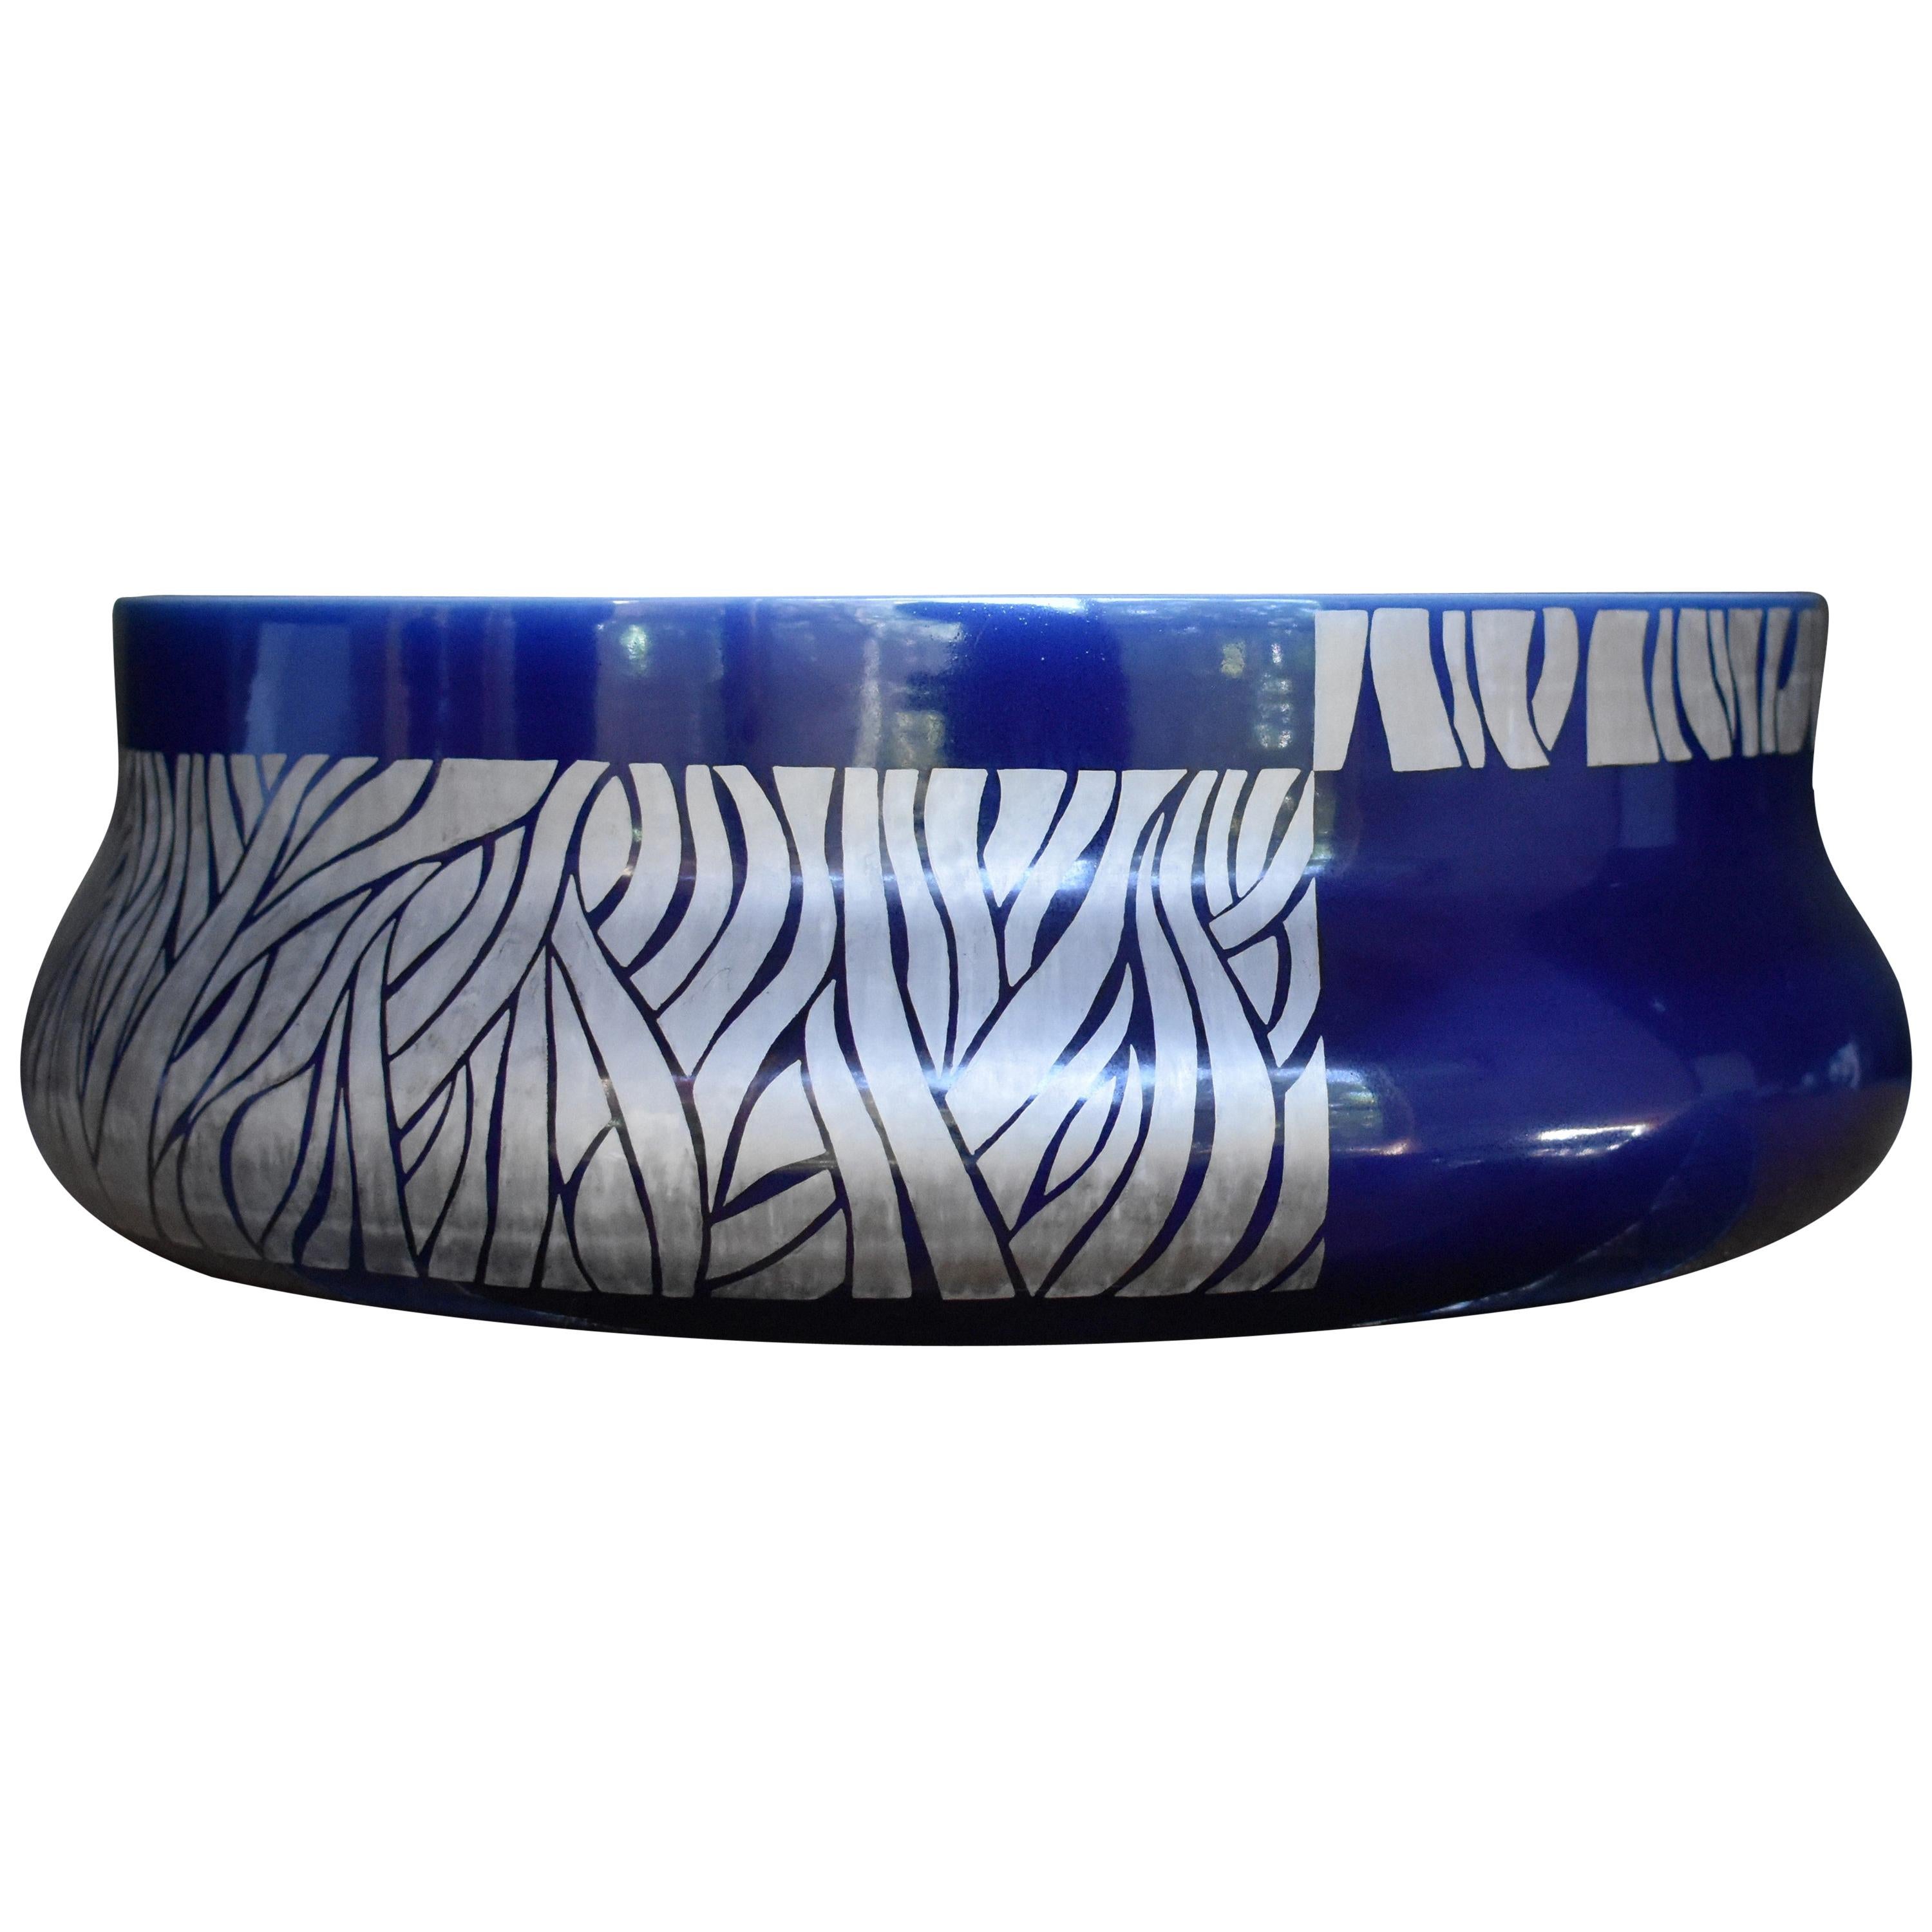 Japanese Blue Platinum Porcelain Vase by Master Artist, 2 For Sale